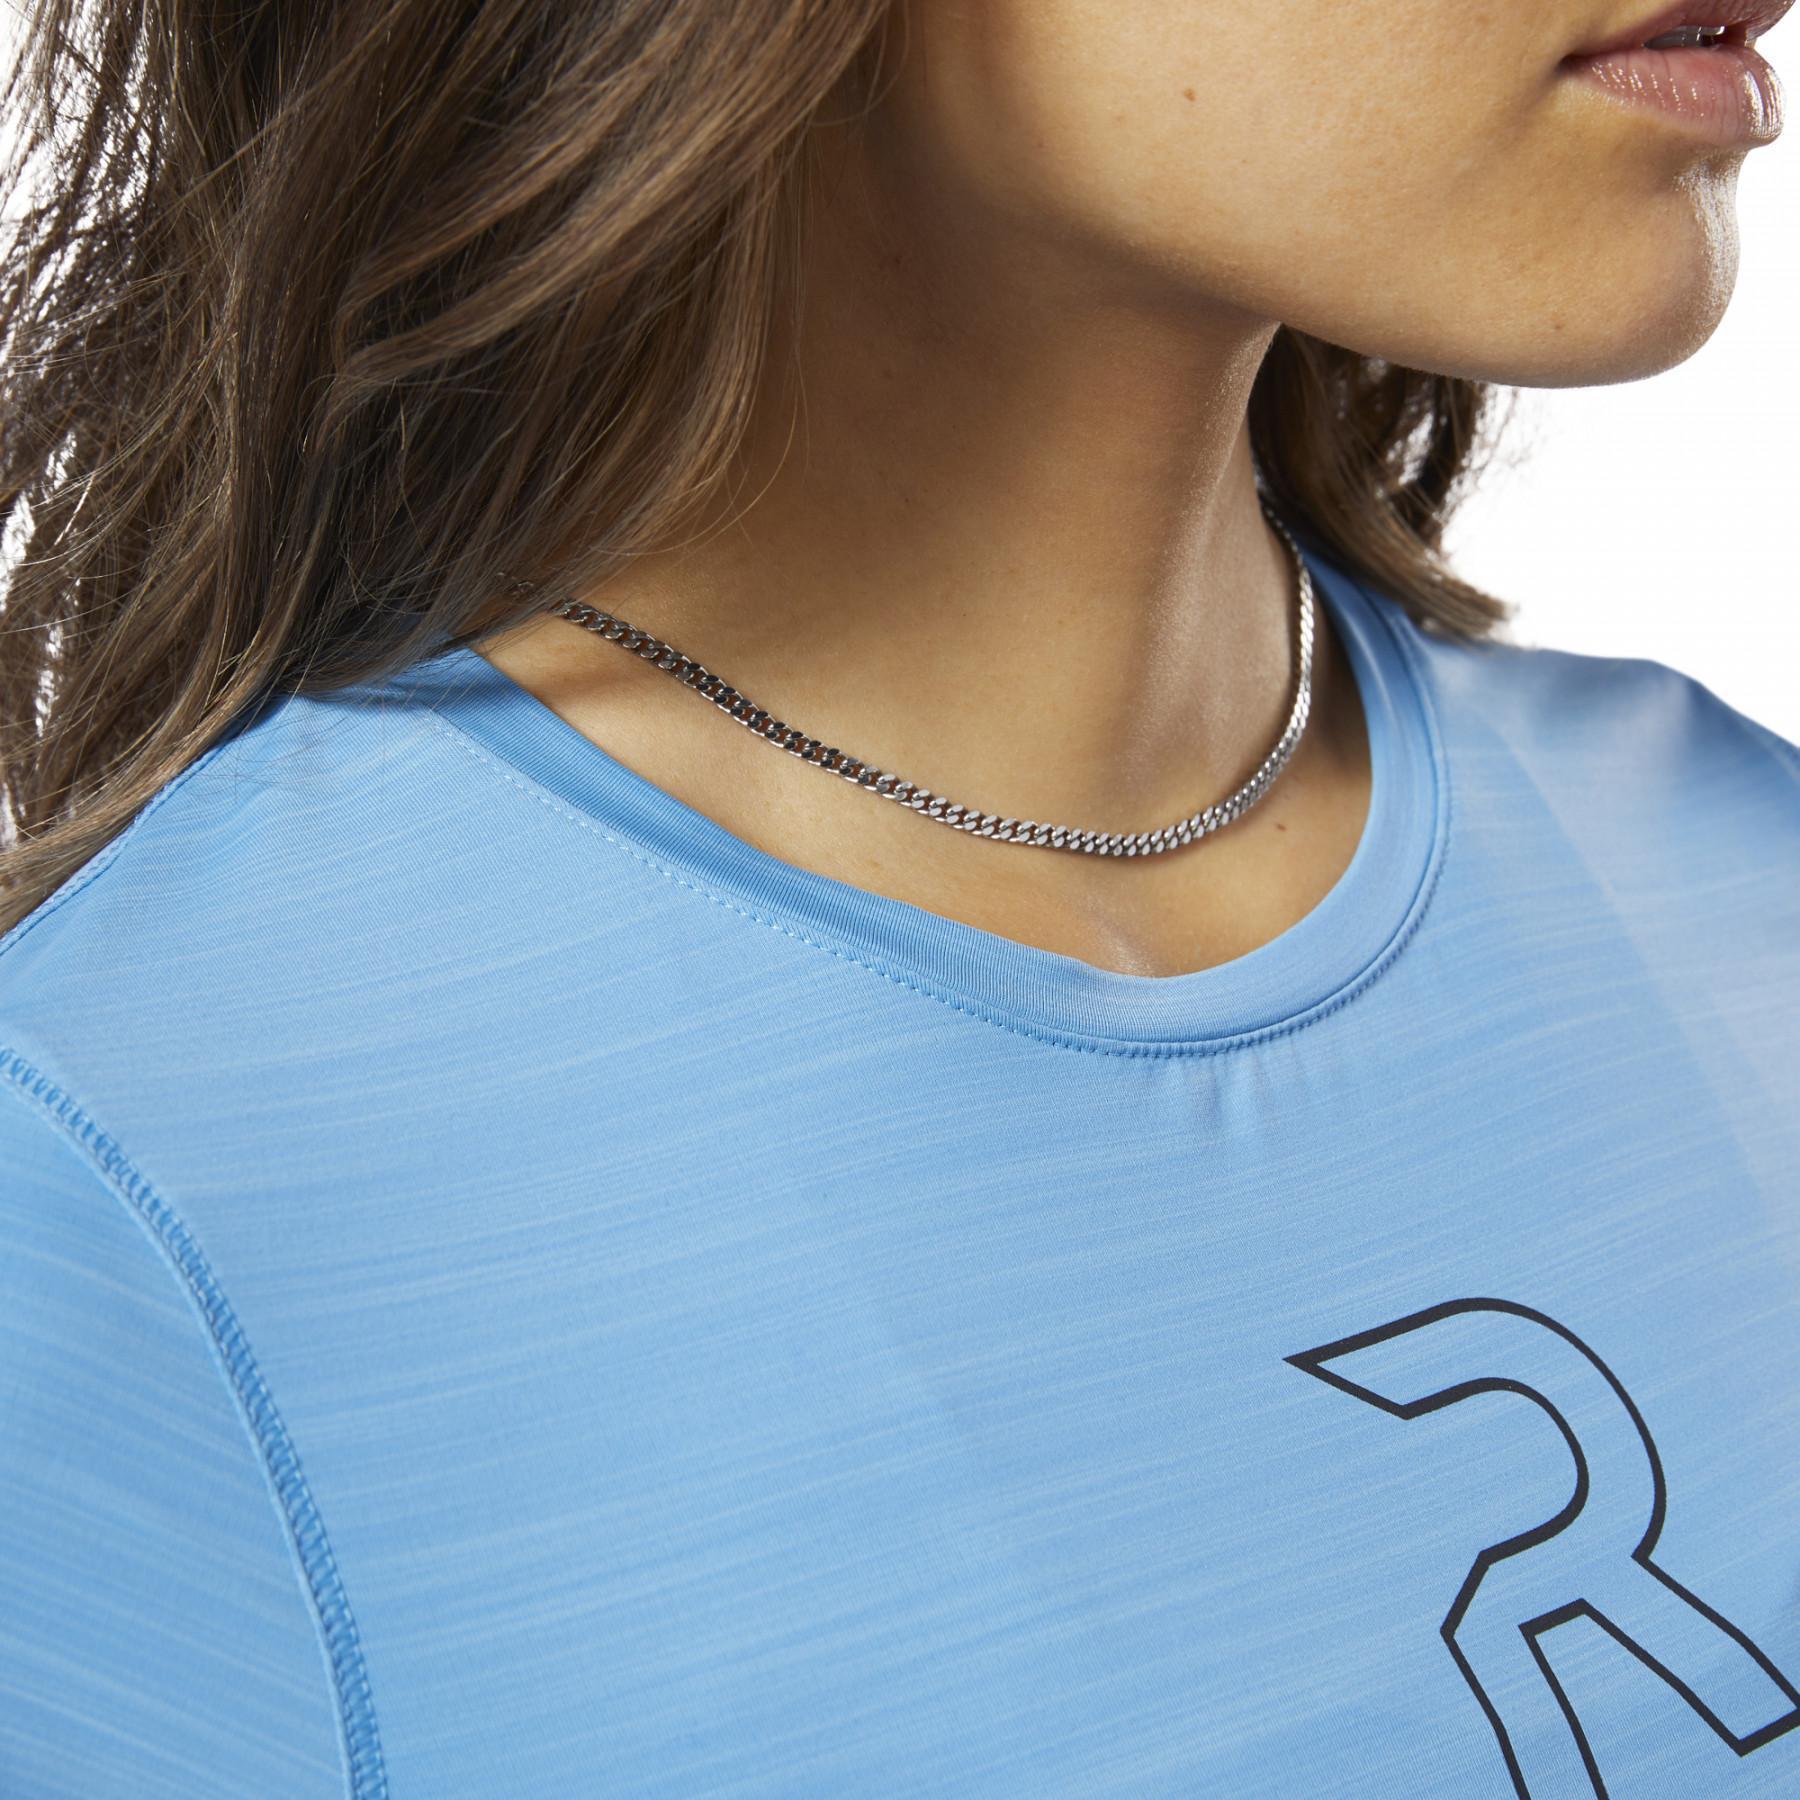 T-shirt femme Reebok One Series Running Activchill